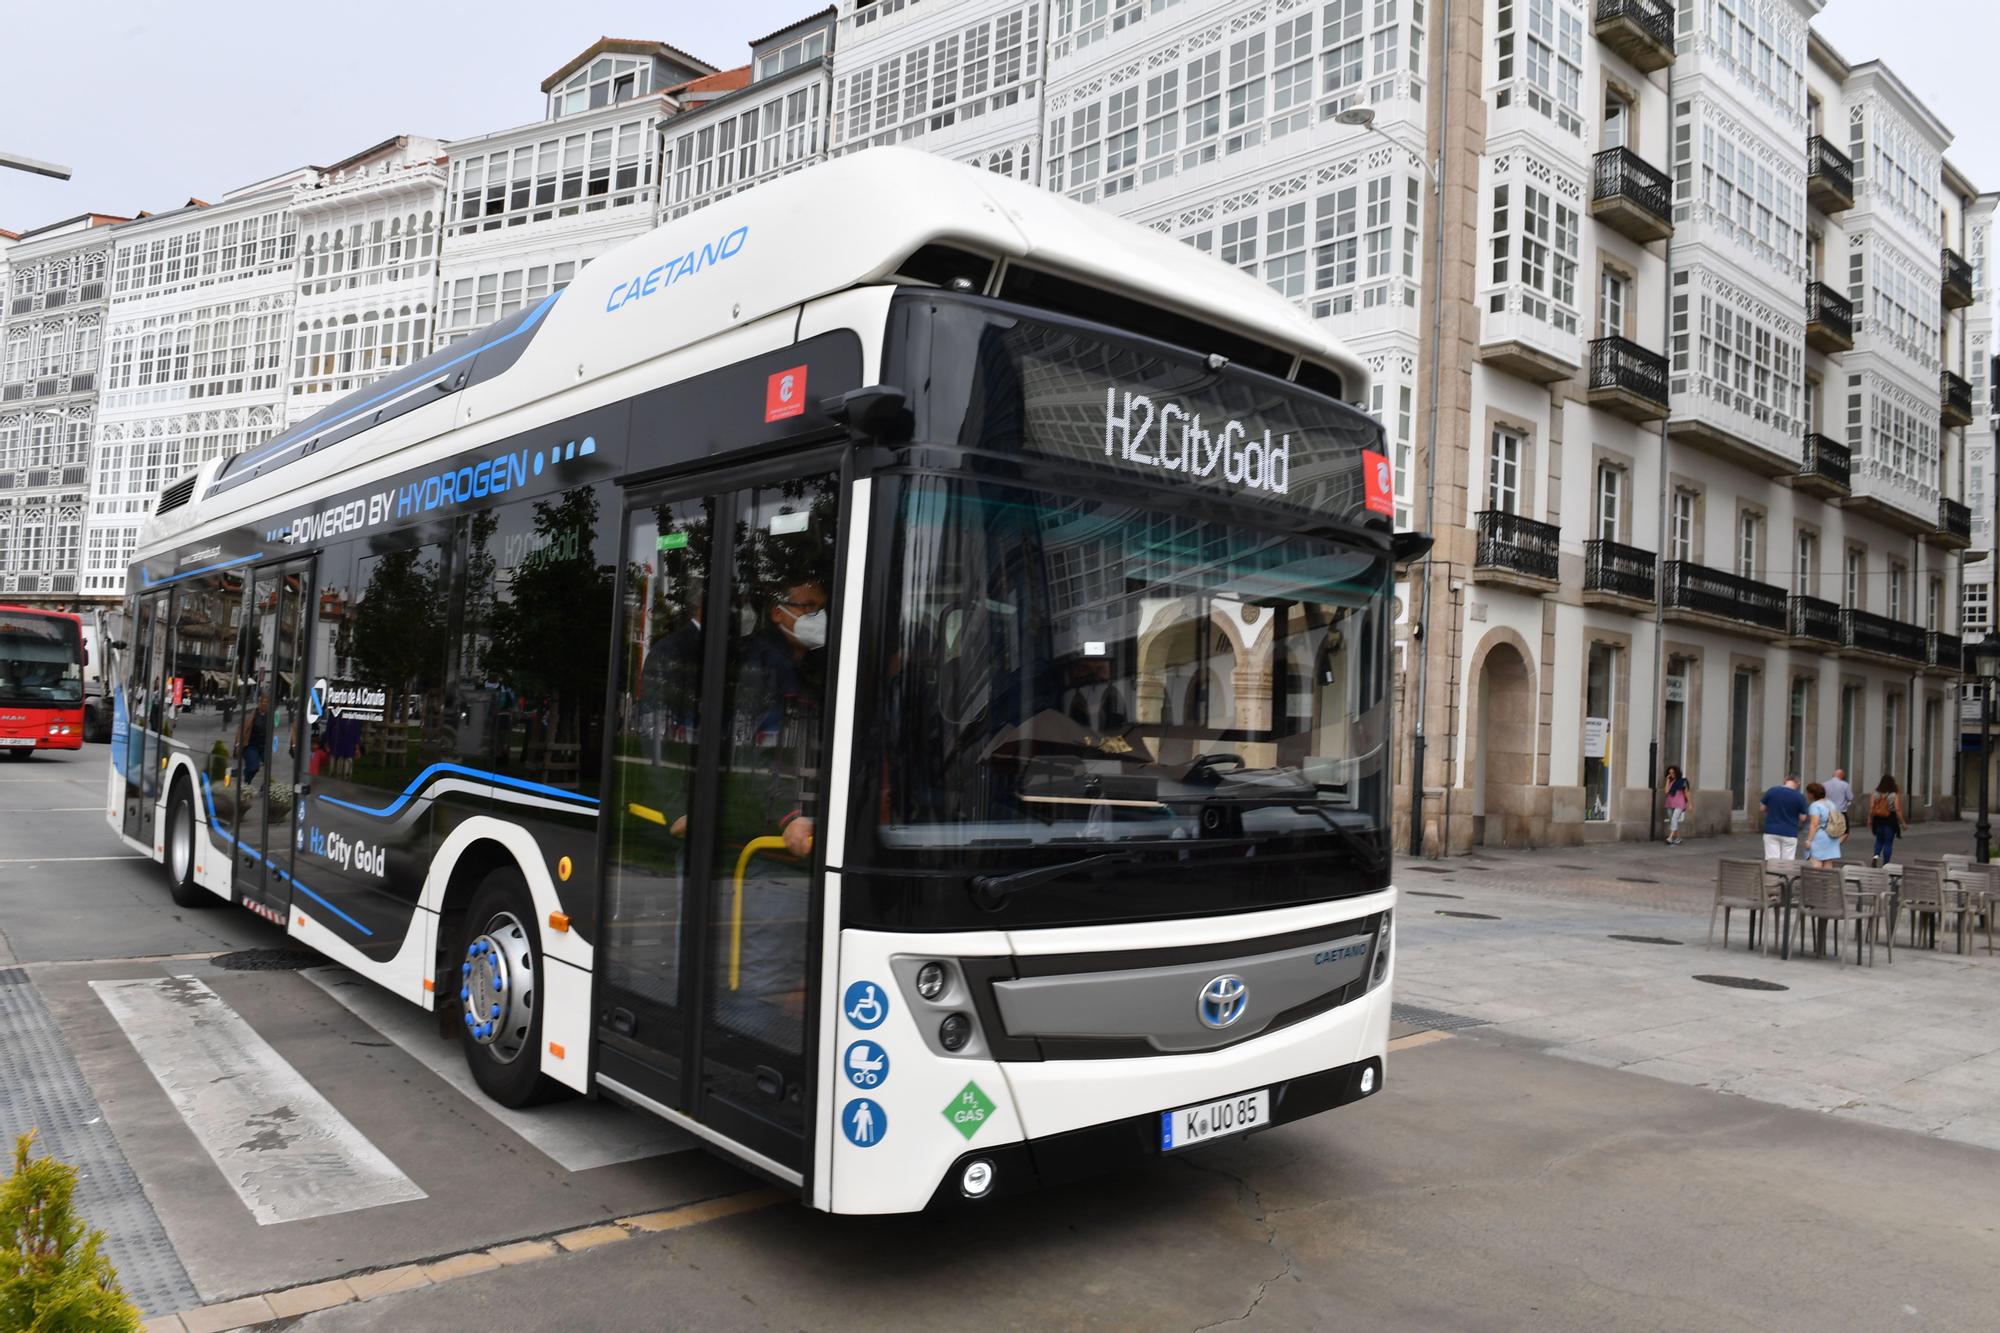 Un bus propulsado por hidrógeno se une a la línea 1 para recorrer A Coruña durante una semana